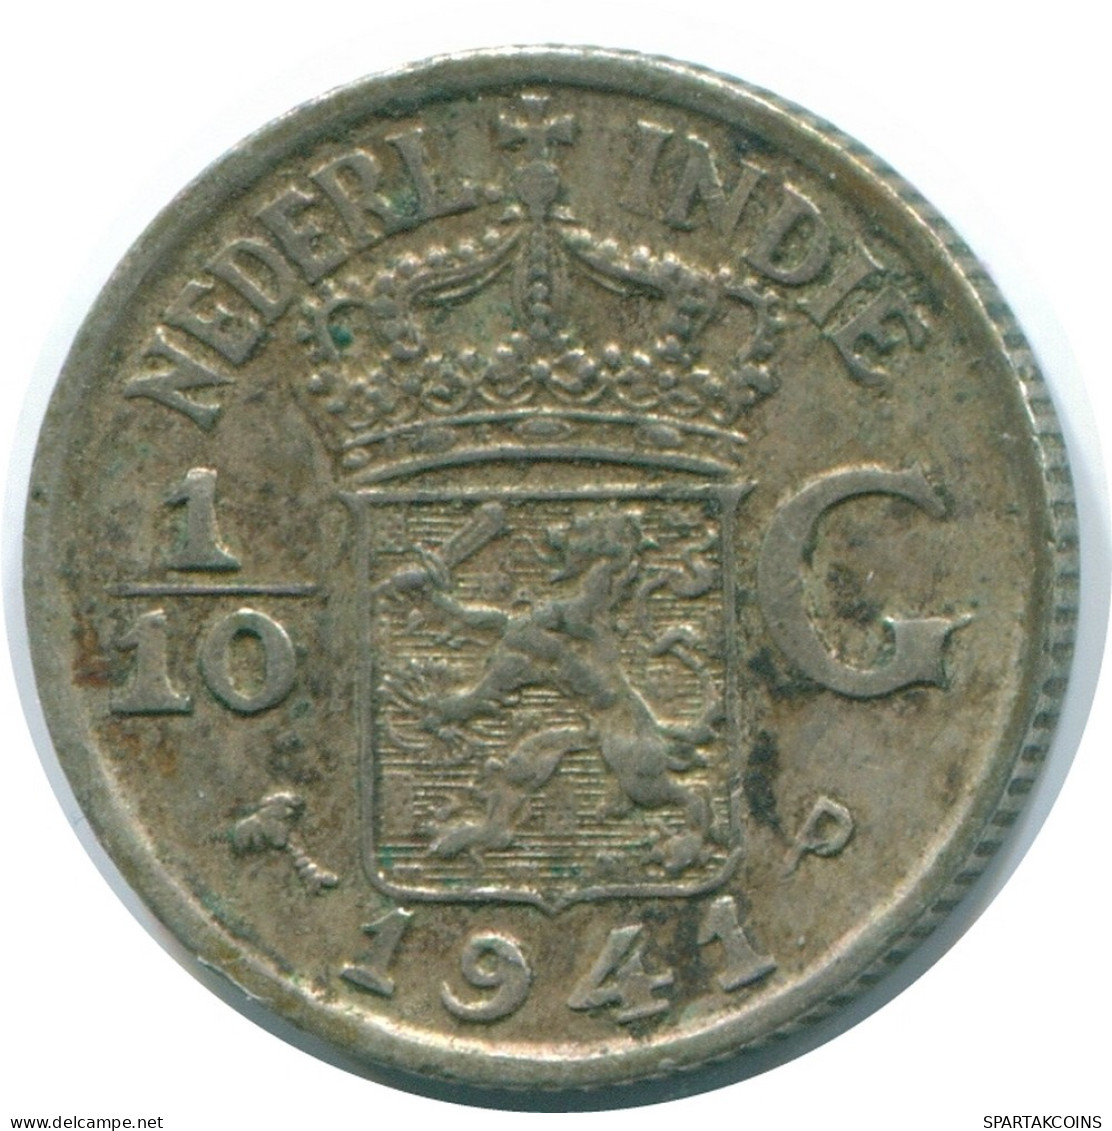 1/10 GULDEN 1941 P NETHERLANDS EAST INDIES SILVER Colonial Coin #NL13827.3.U - Niederländisch-Indien